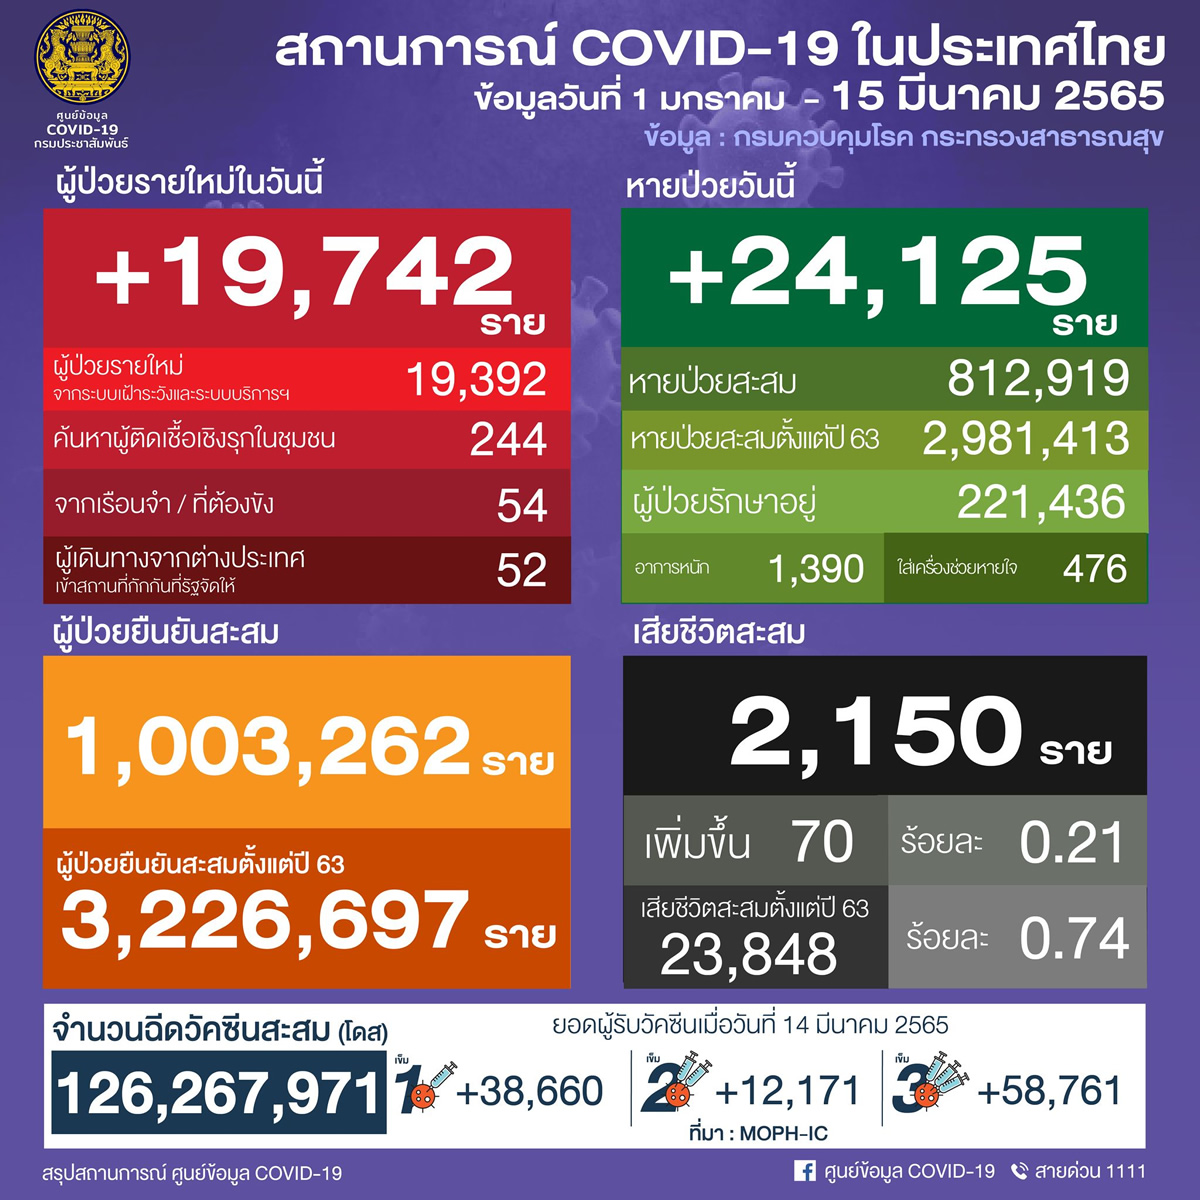 タイ 19,7420人陽性 70人死亡／バンコク 2,904人陽性／ナコンシータマラート 1,235人陽性／チョンブリ 888人陽性［2022年3月15日発表］